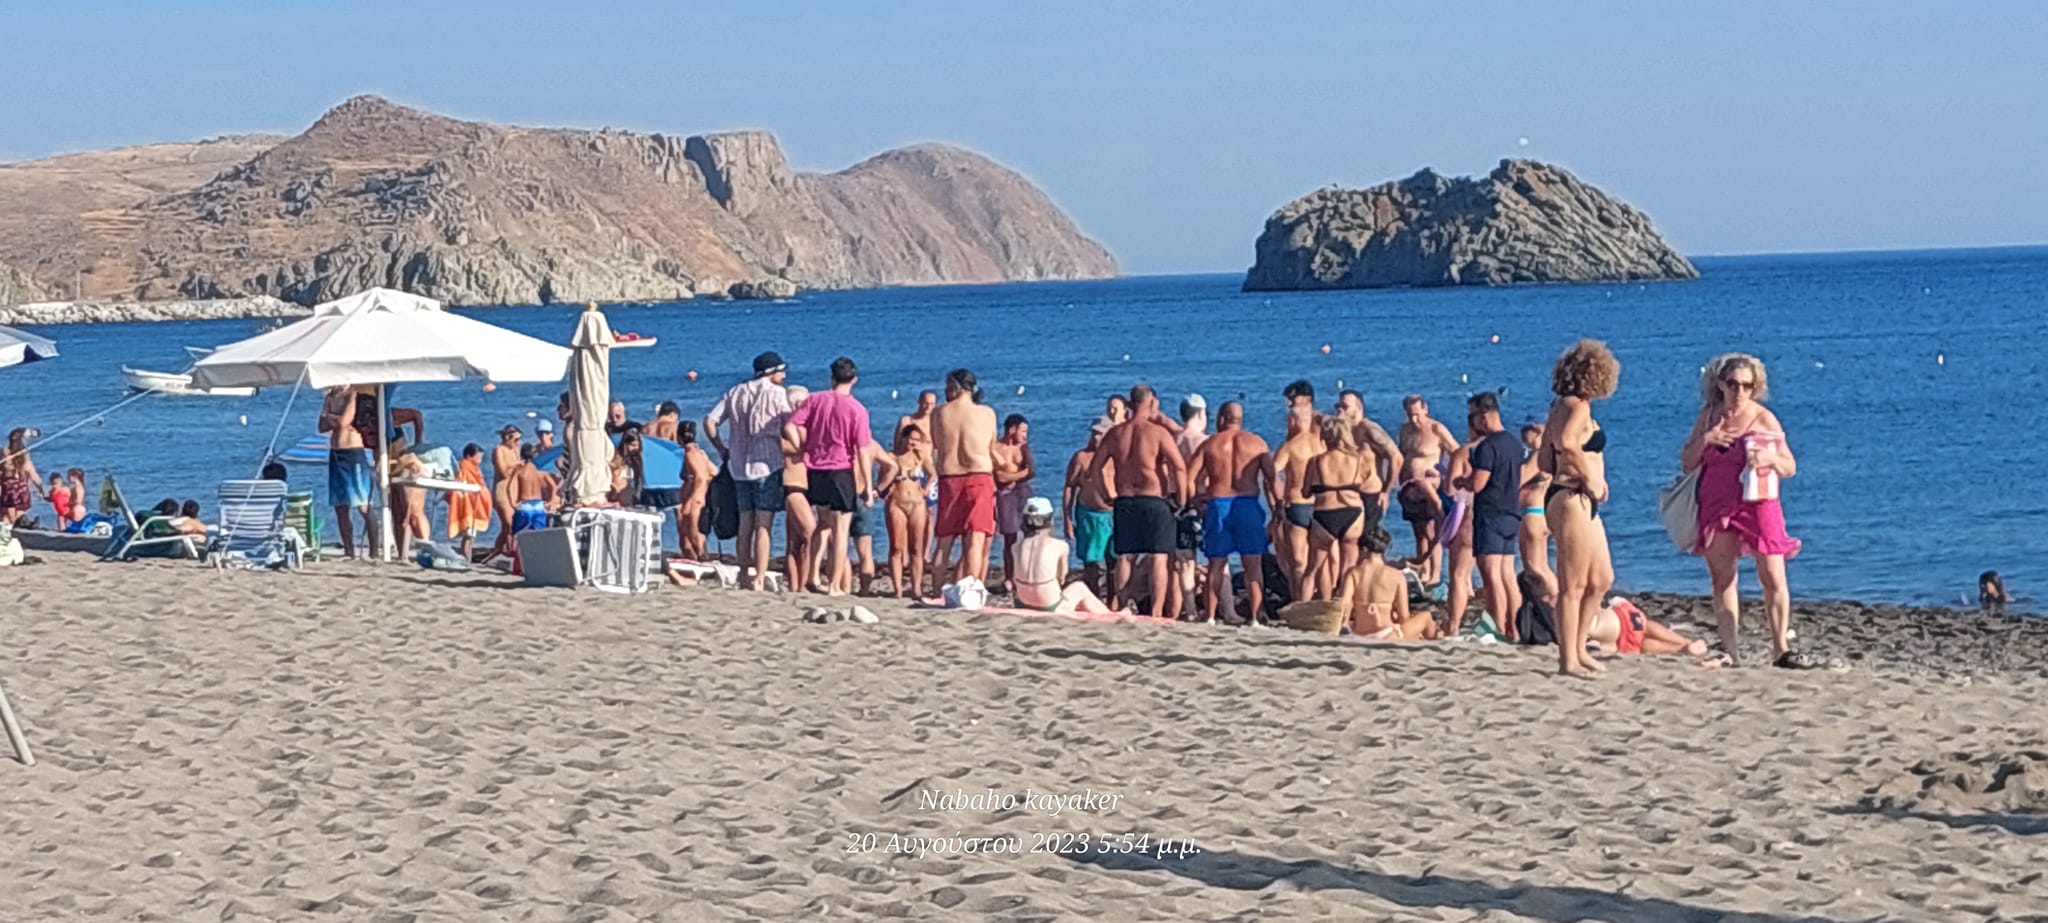 Δυο γιατροί έσωσαν 12χρονο κορίτσι στην παραλία Ερεσού- Ανάγκη για απινιδωτή στην πολυσύχναστη παραλία